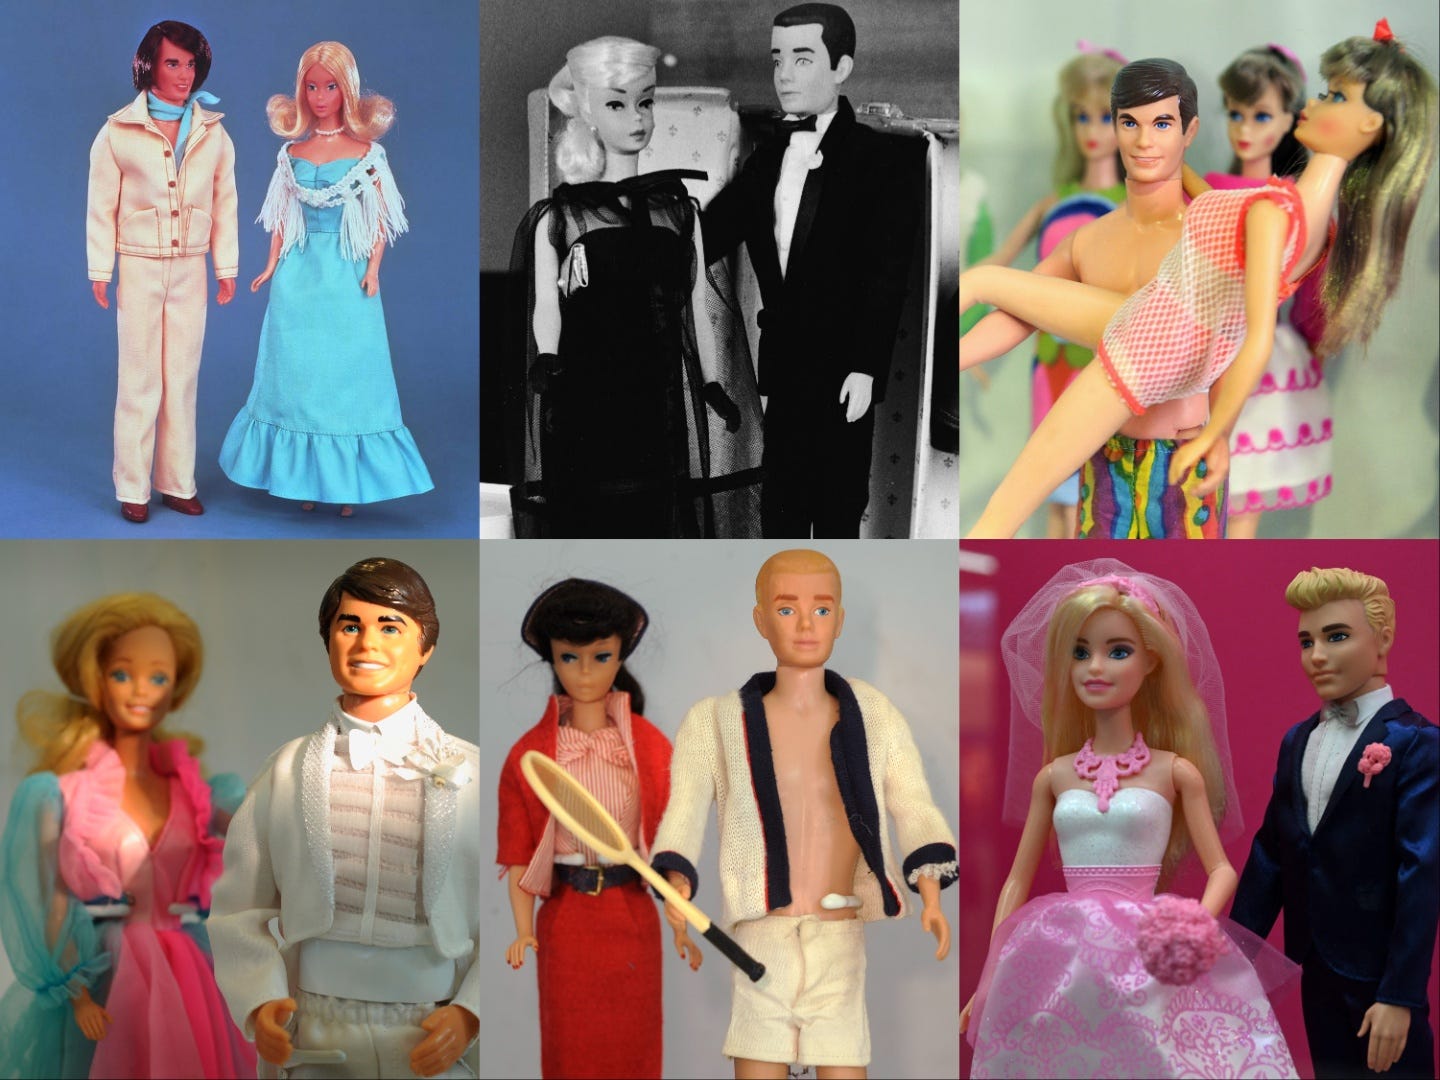 Sechs Fotos von Barbie- und Ken-Puppen aus verschiedenen Jahrzehnten